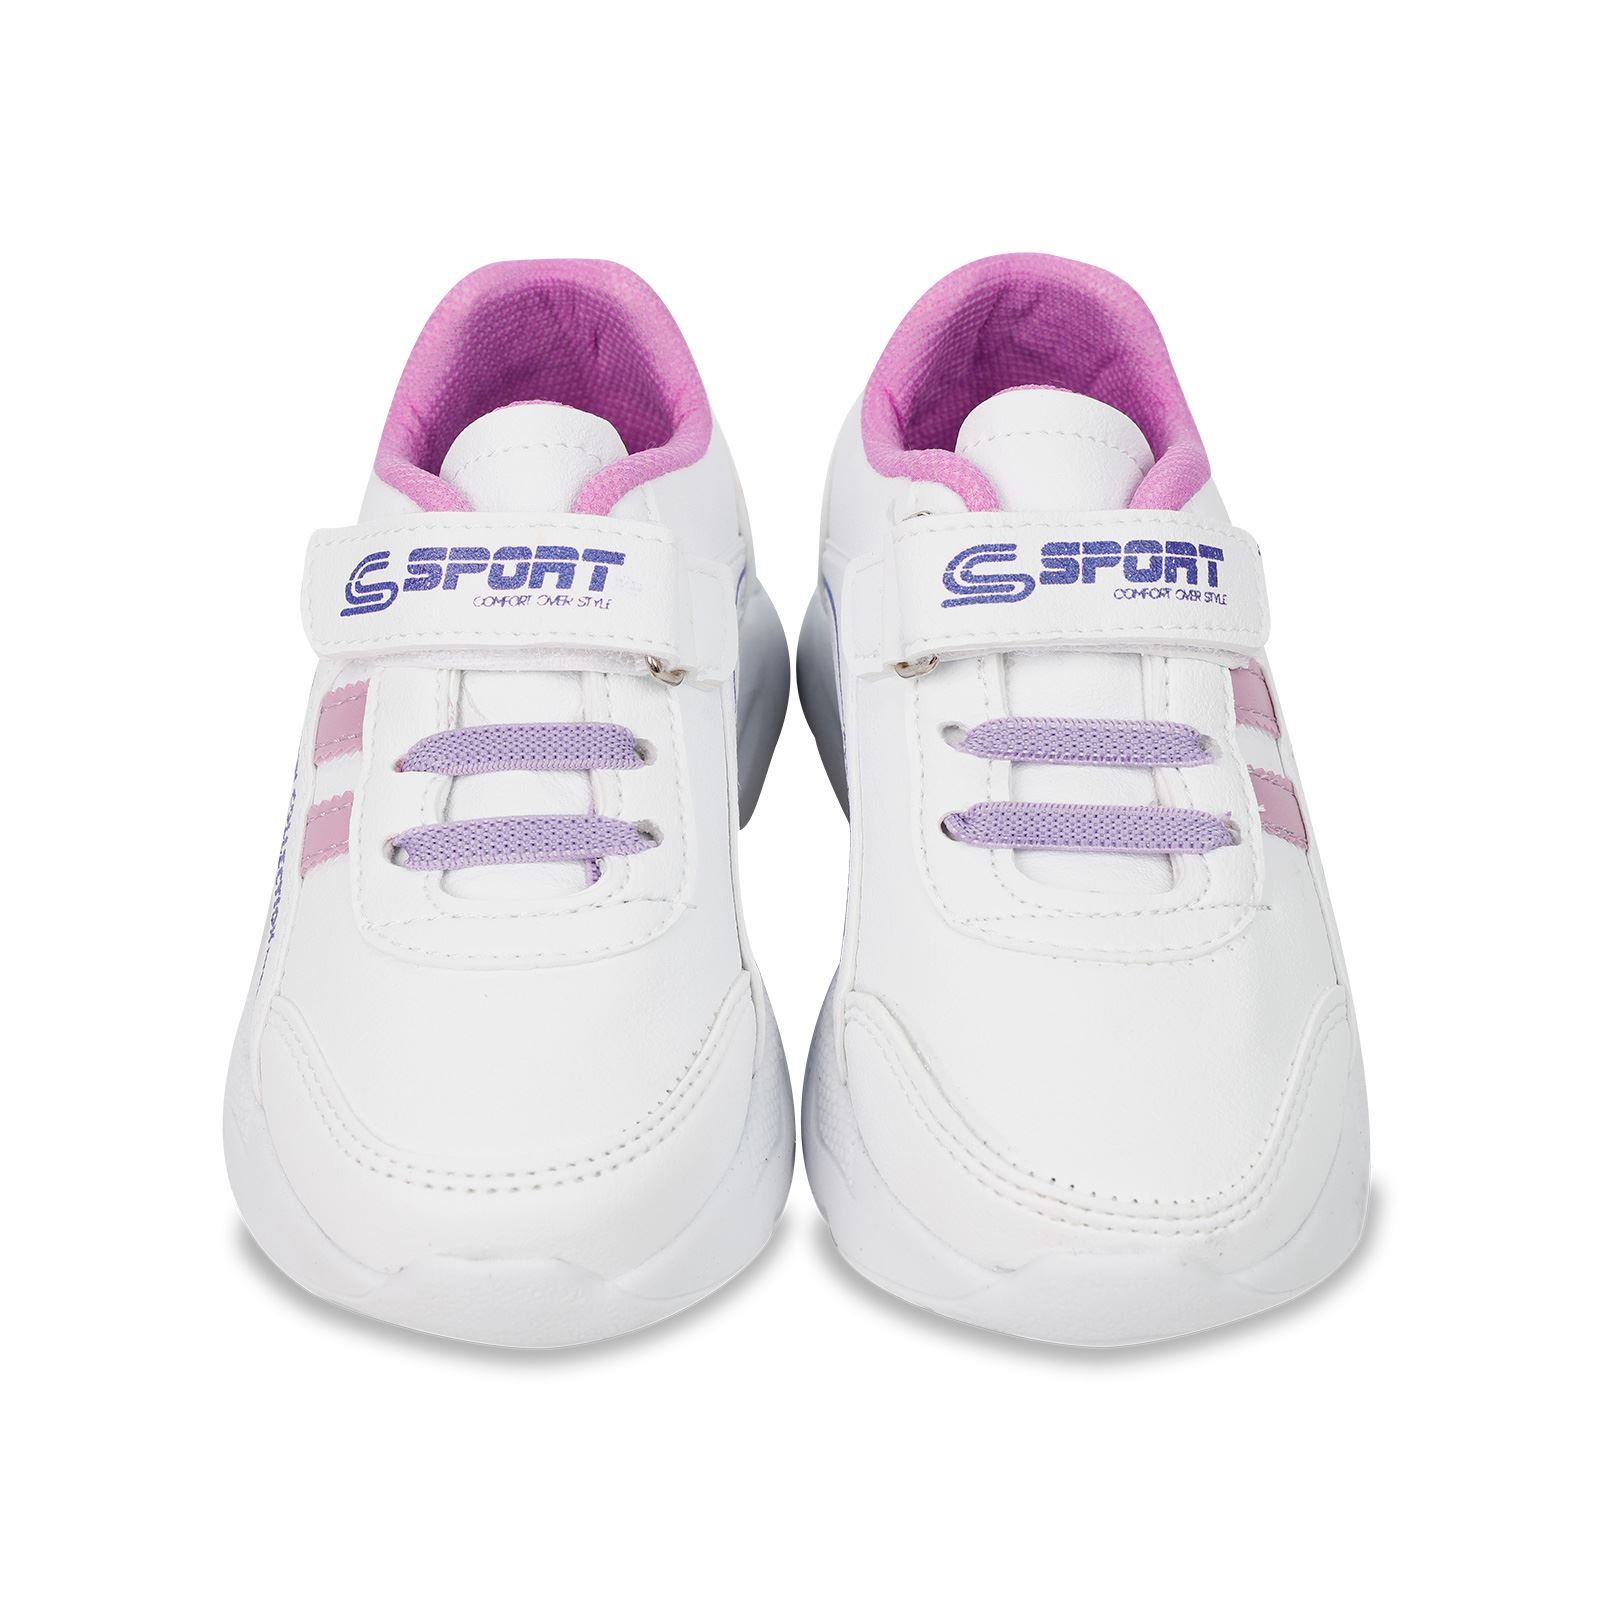 Civil Girls Kız Çocuk Spor Ayakkabı 30-35 Numara Beyaz